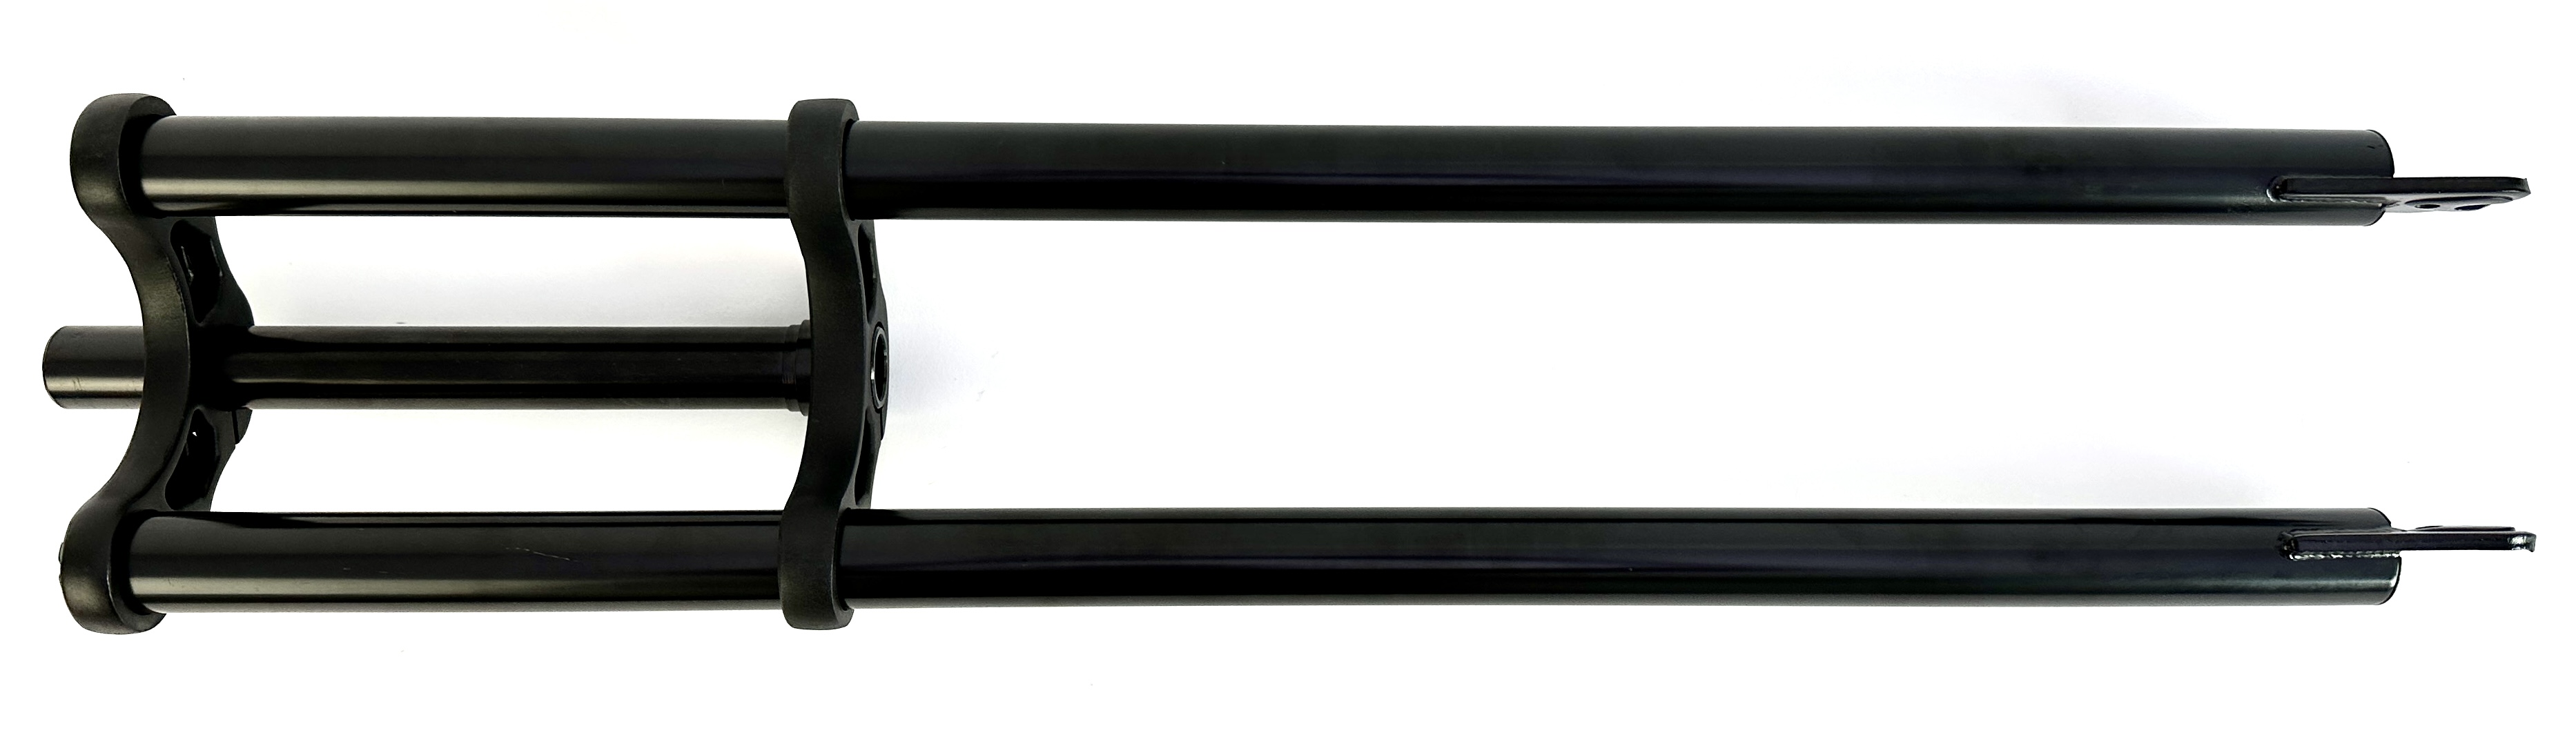 8-Horquilla de doble puente 750 mm negro eje de 1 1/8 pulgada